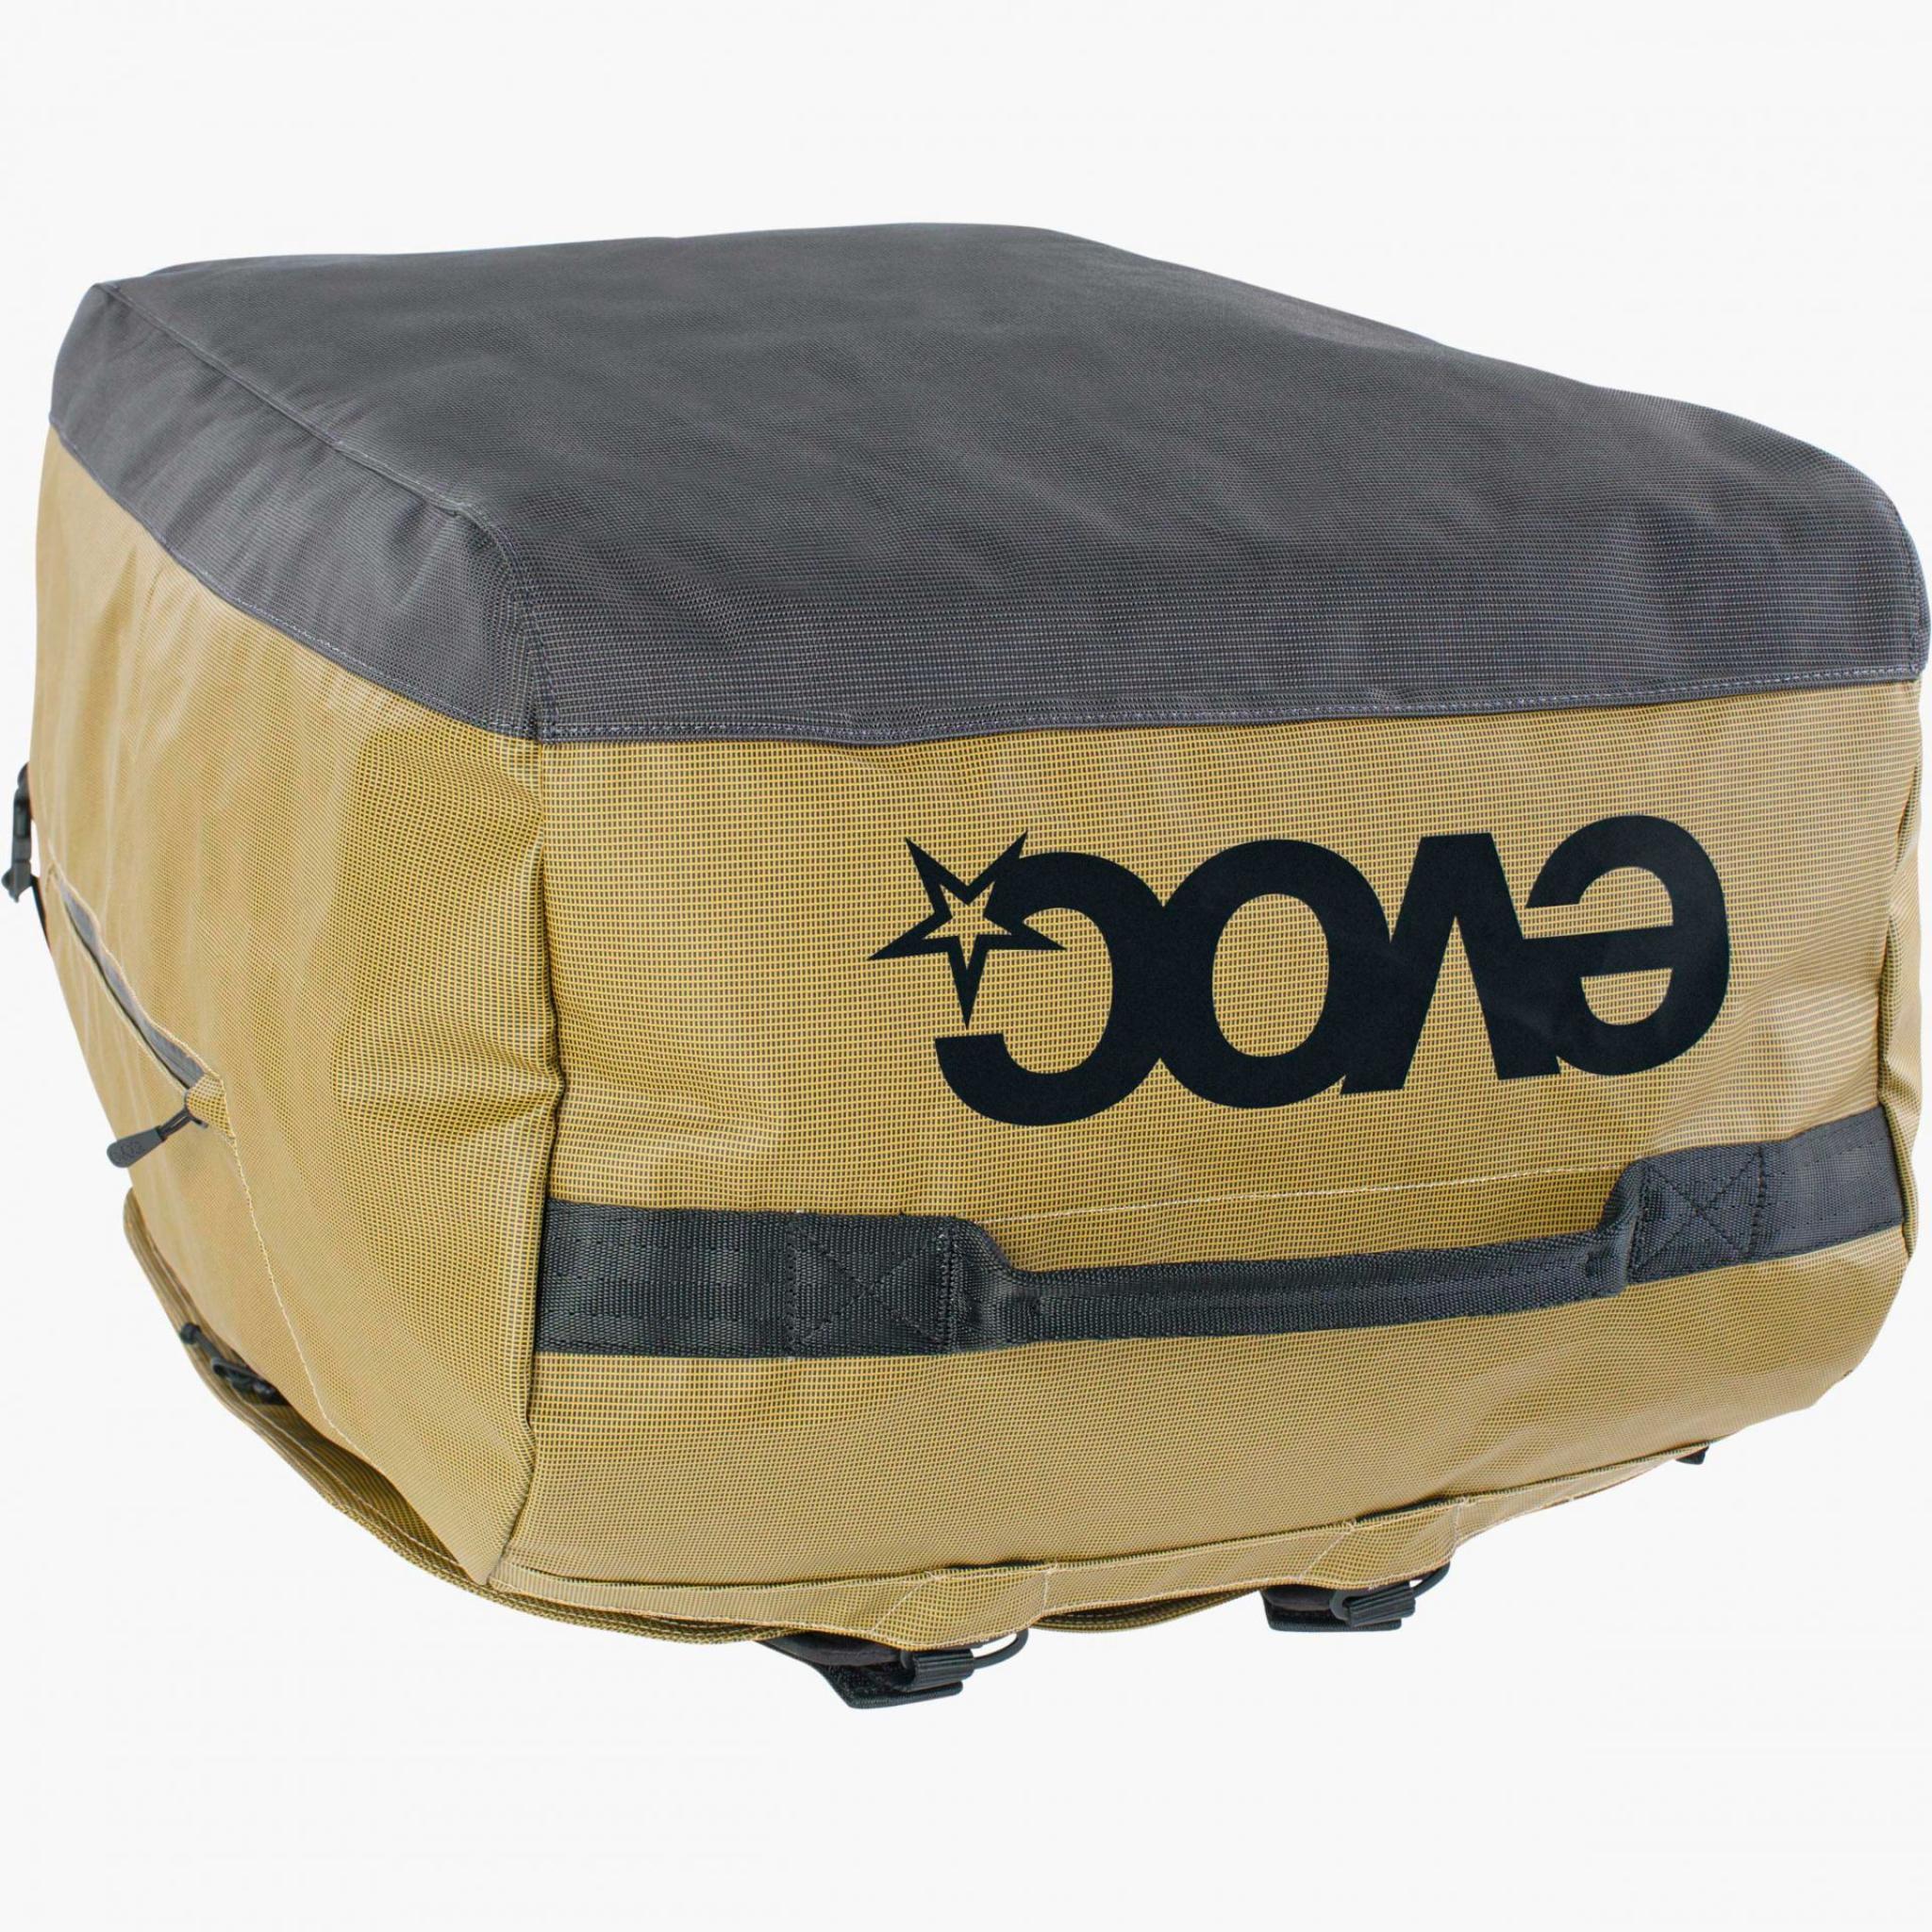 EVOC Duffle Bag 100